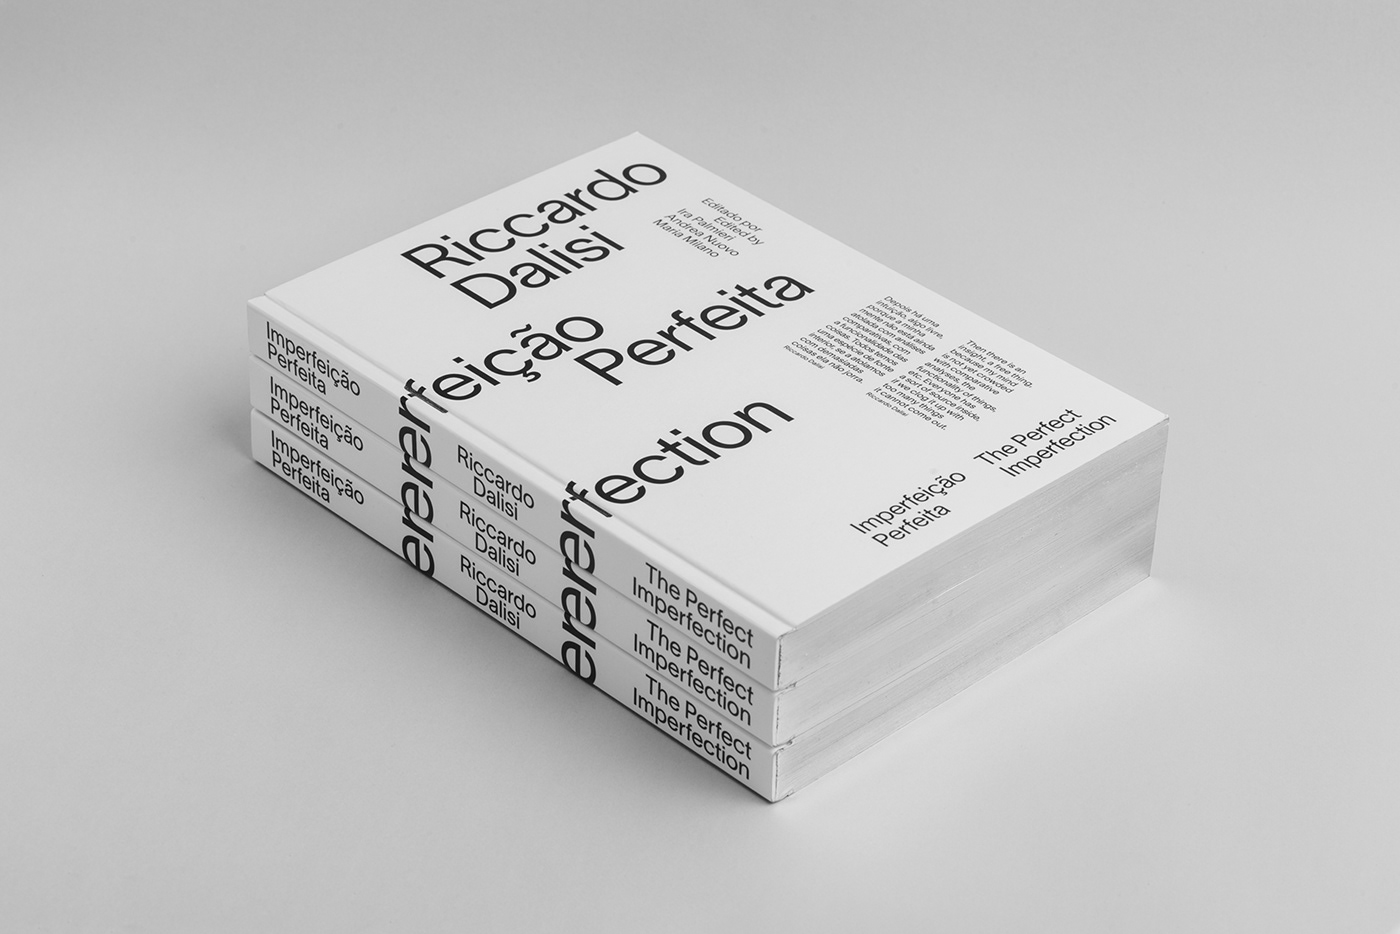 editorial design  graphic design  typography   book Catalogue Porto design biennale porto Riccardo Dalisi catalog